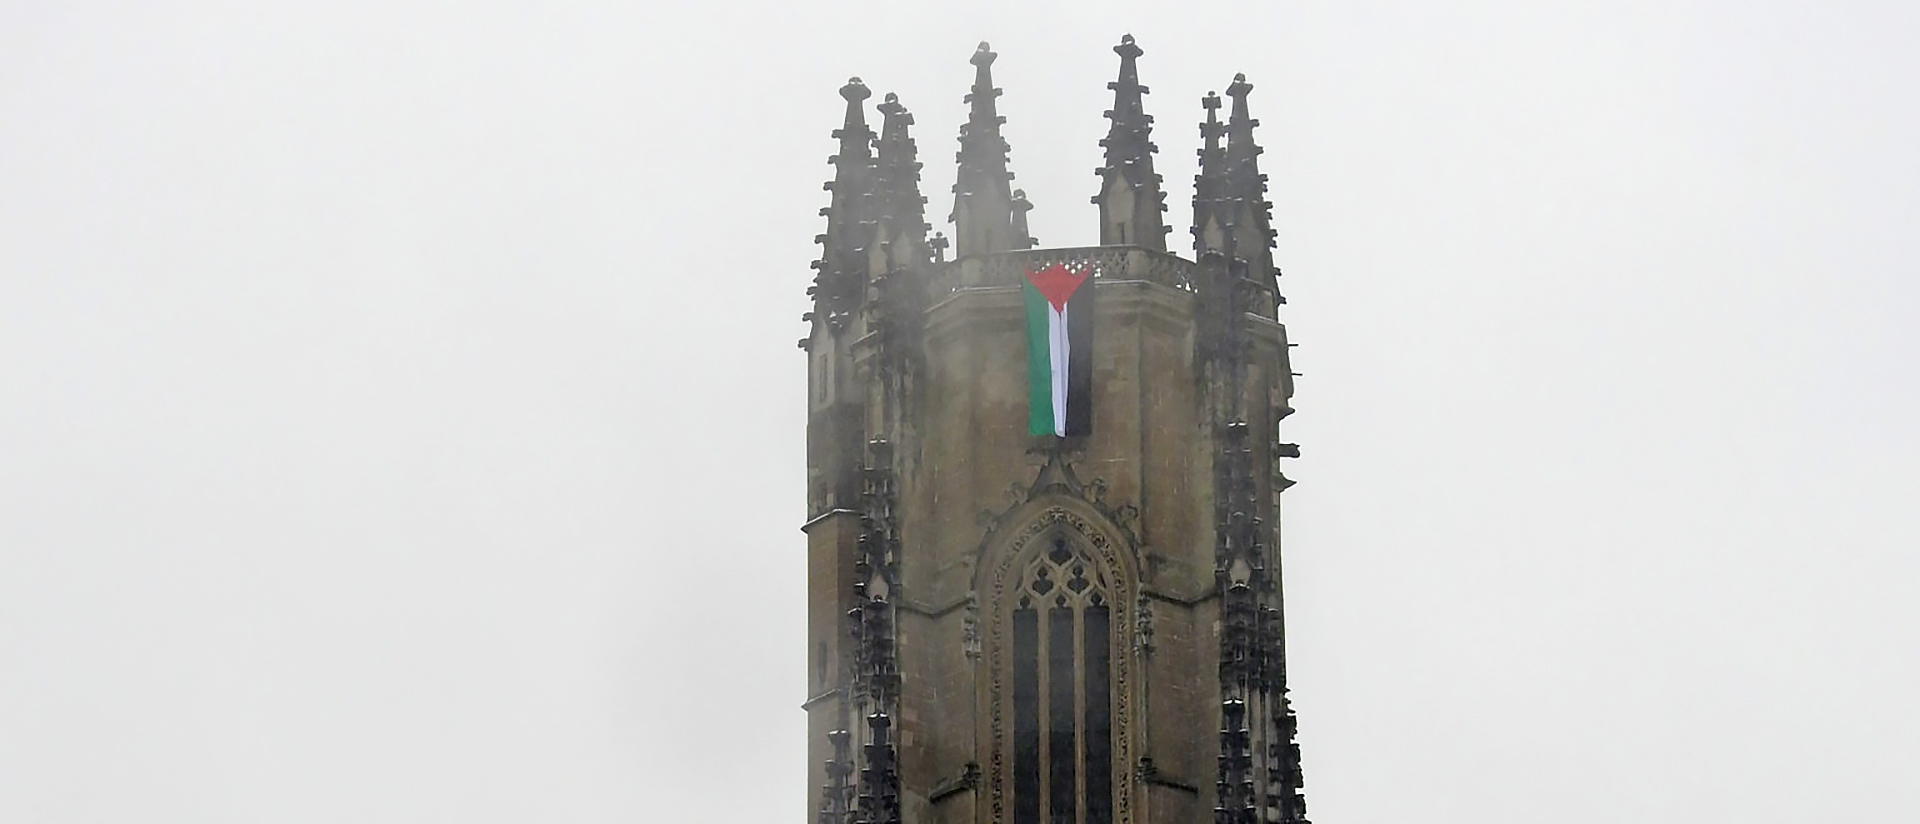 Le drapeau est resté quelques instants suspendu en haut de la cathédrale de Fribourg | «Les gargouilles hurlantes» via laliberte.ch 